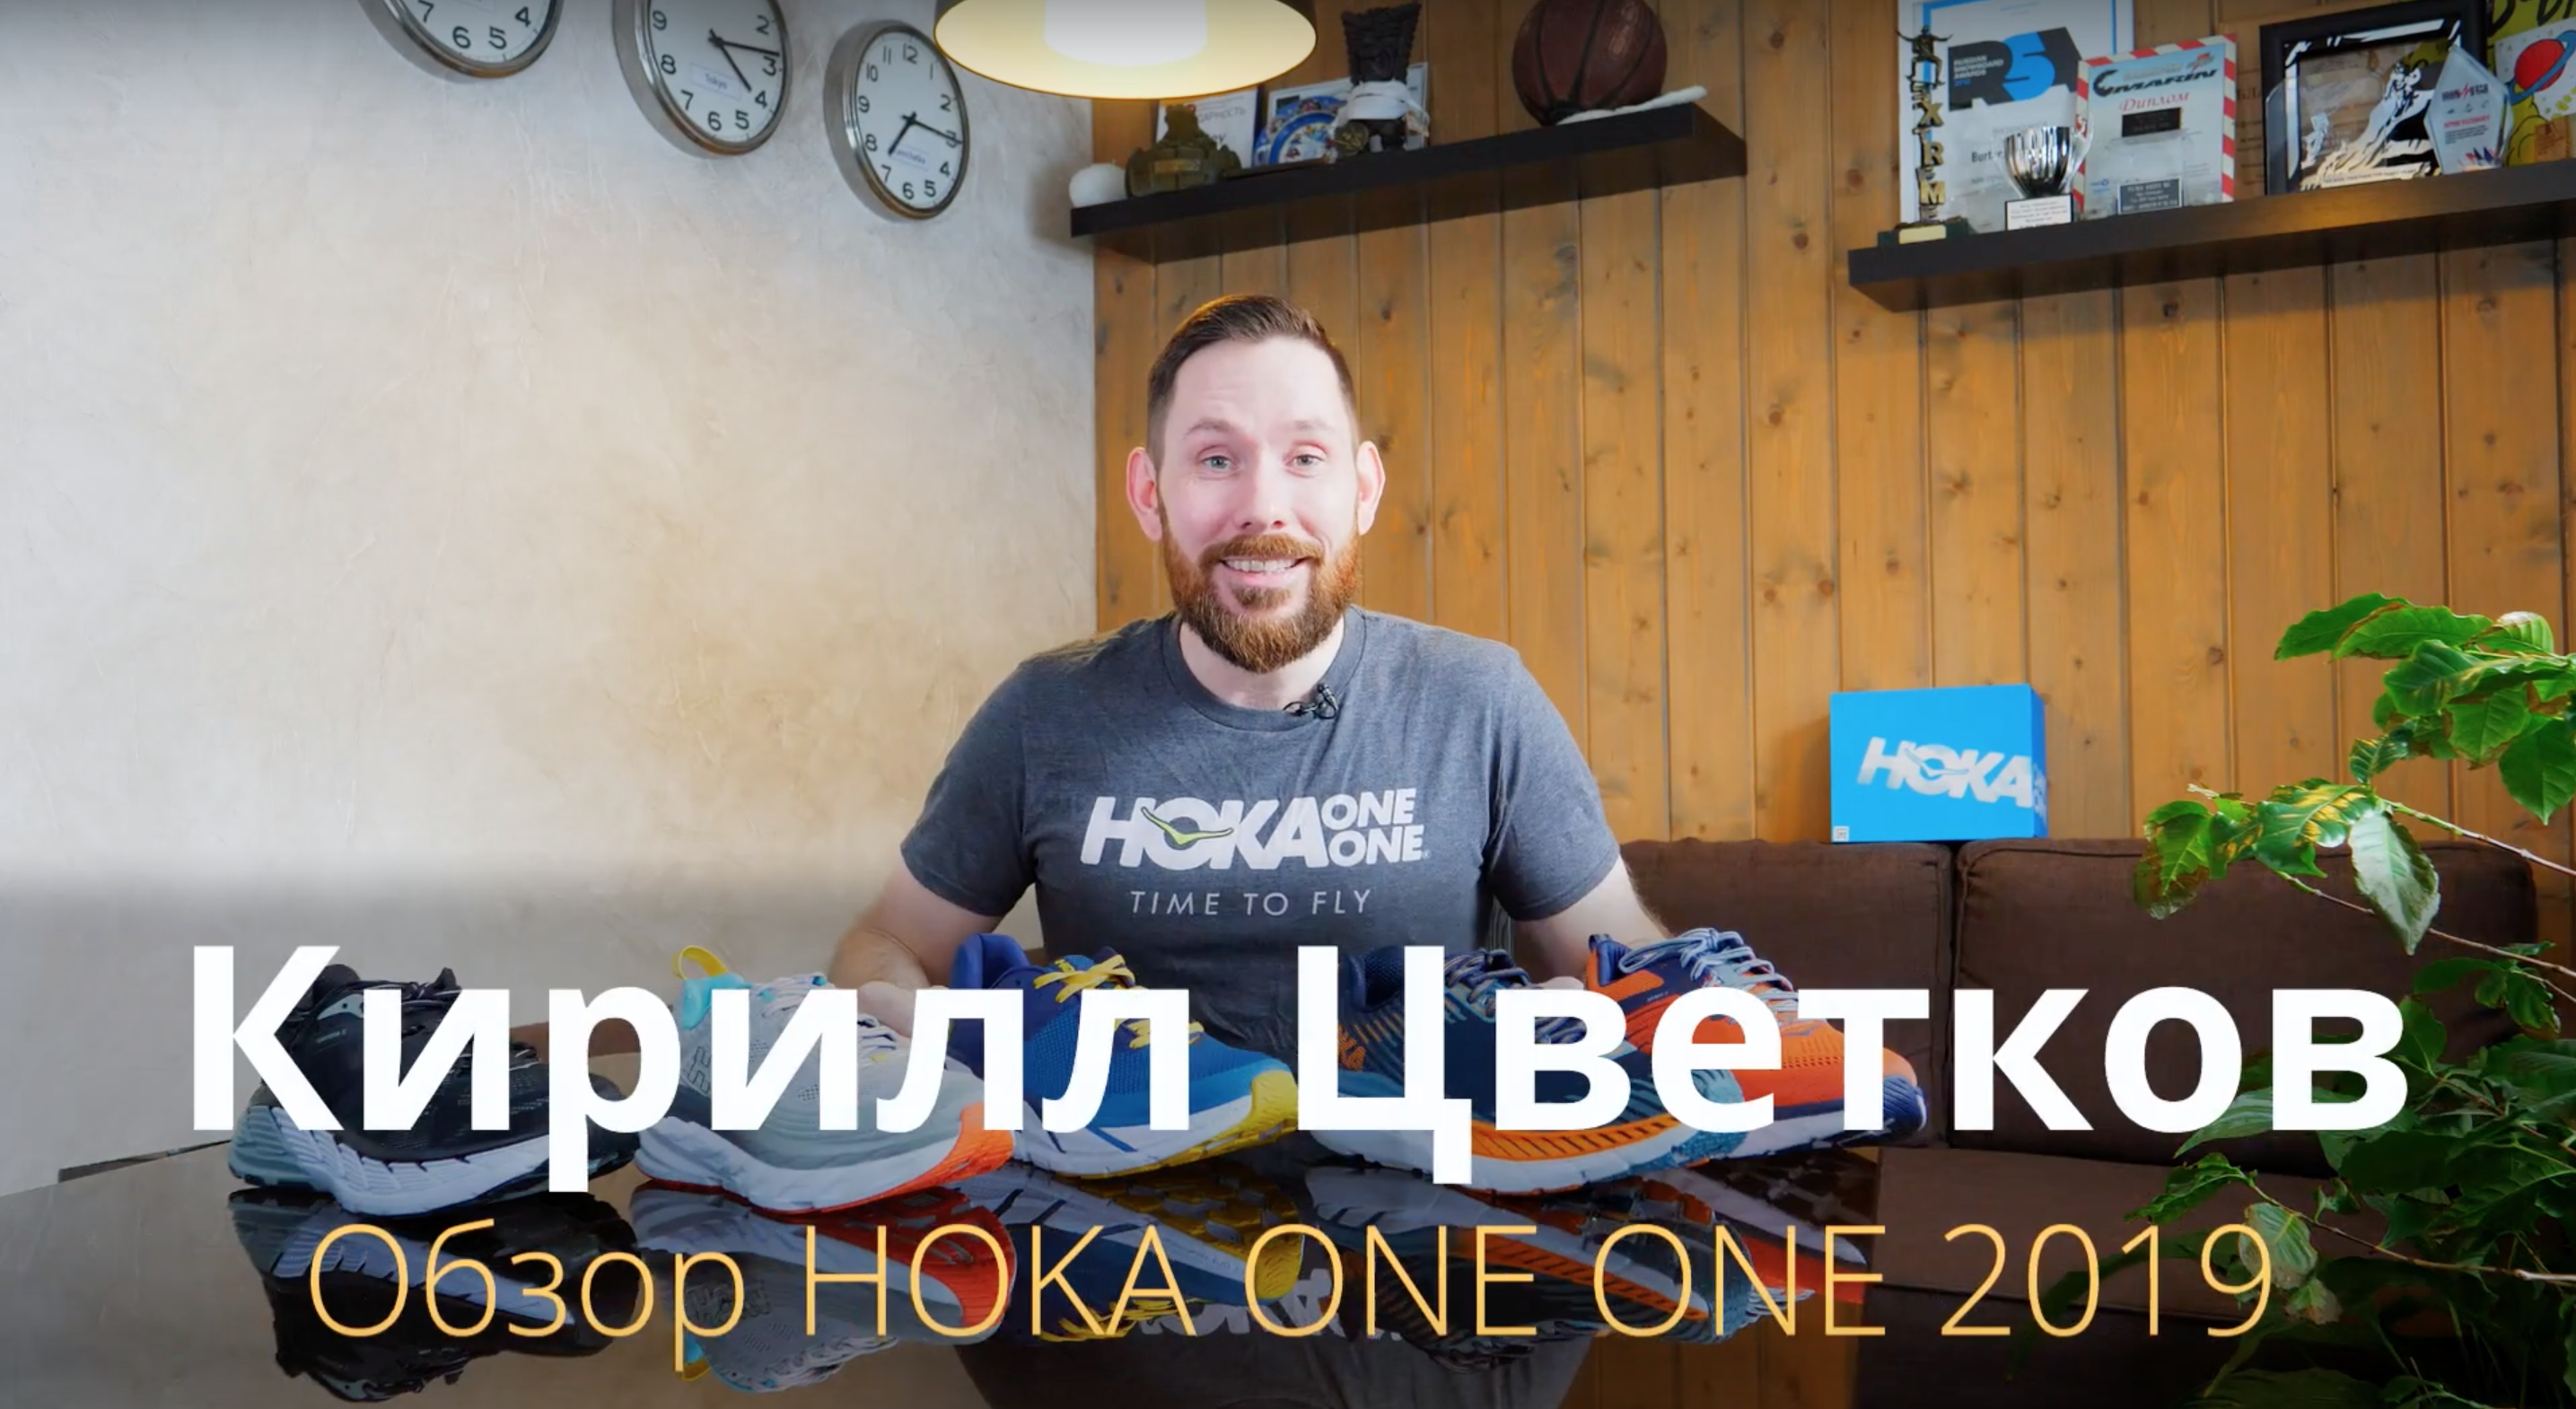 Hoka One One 2019 - обзор